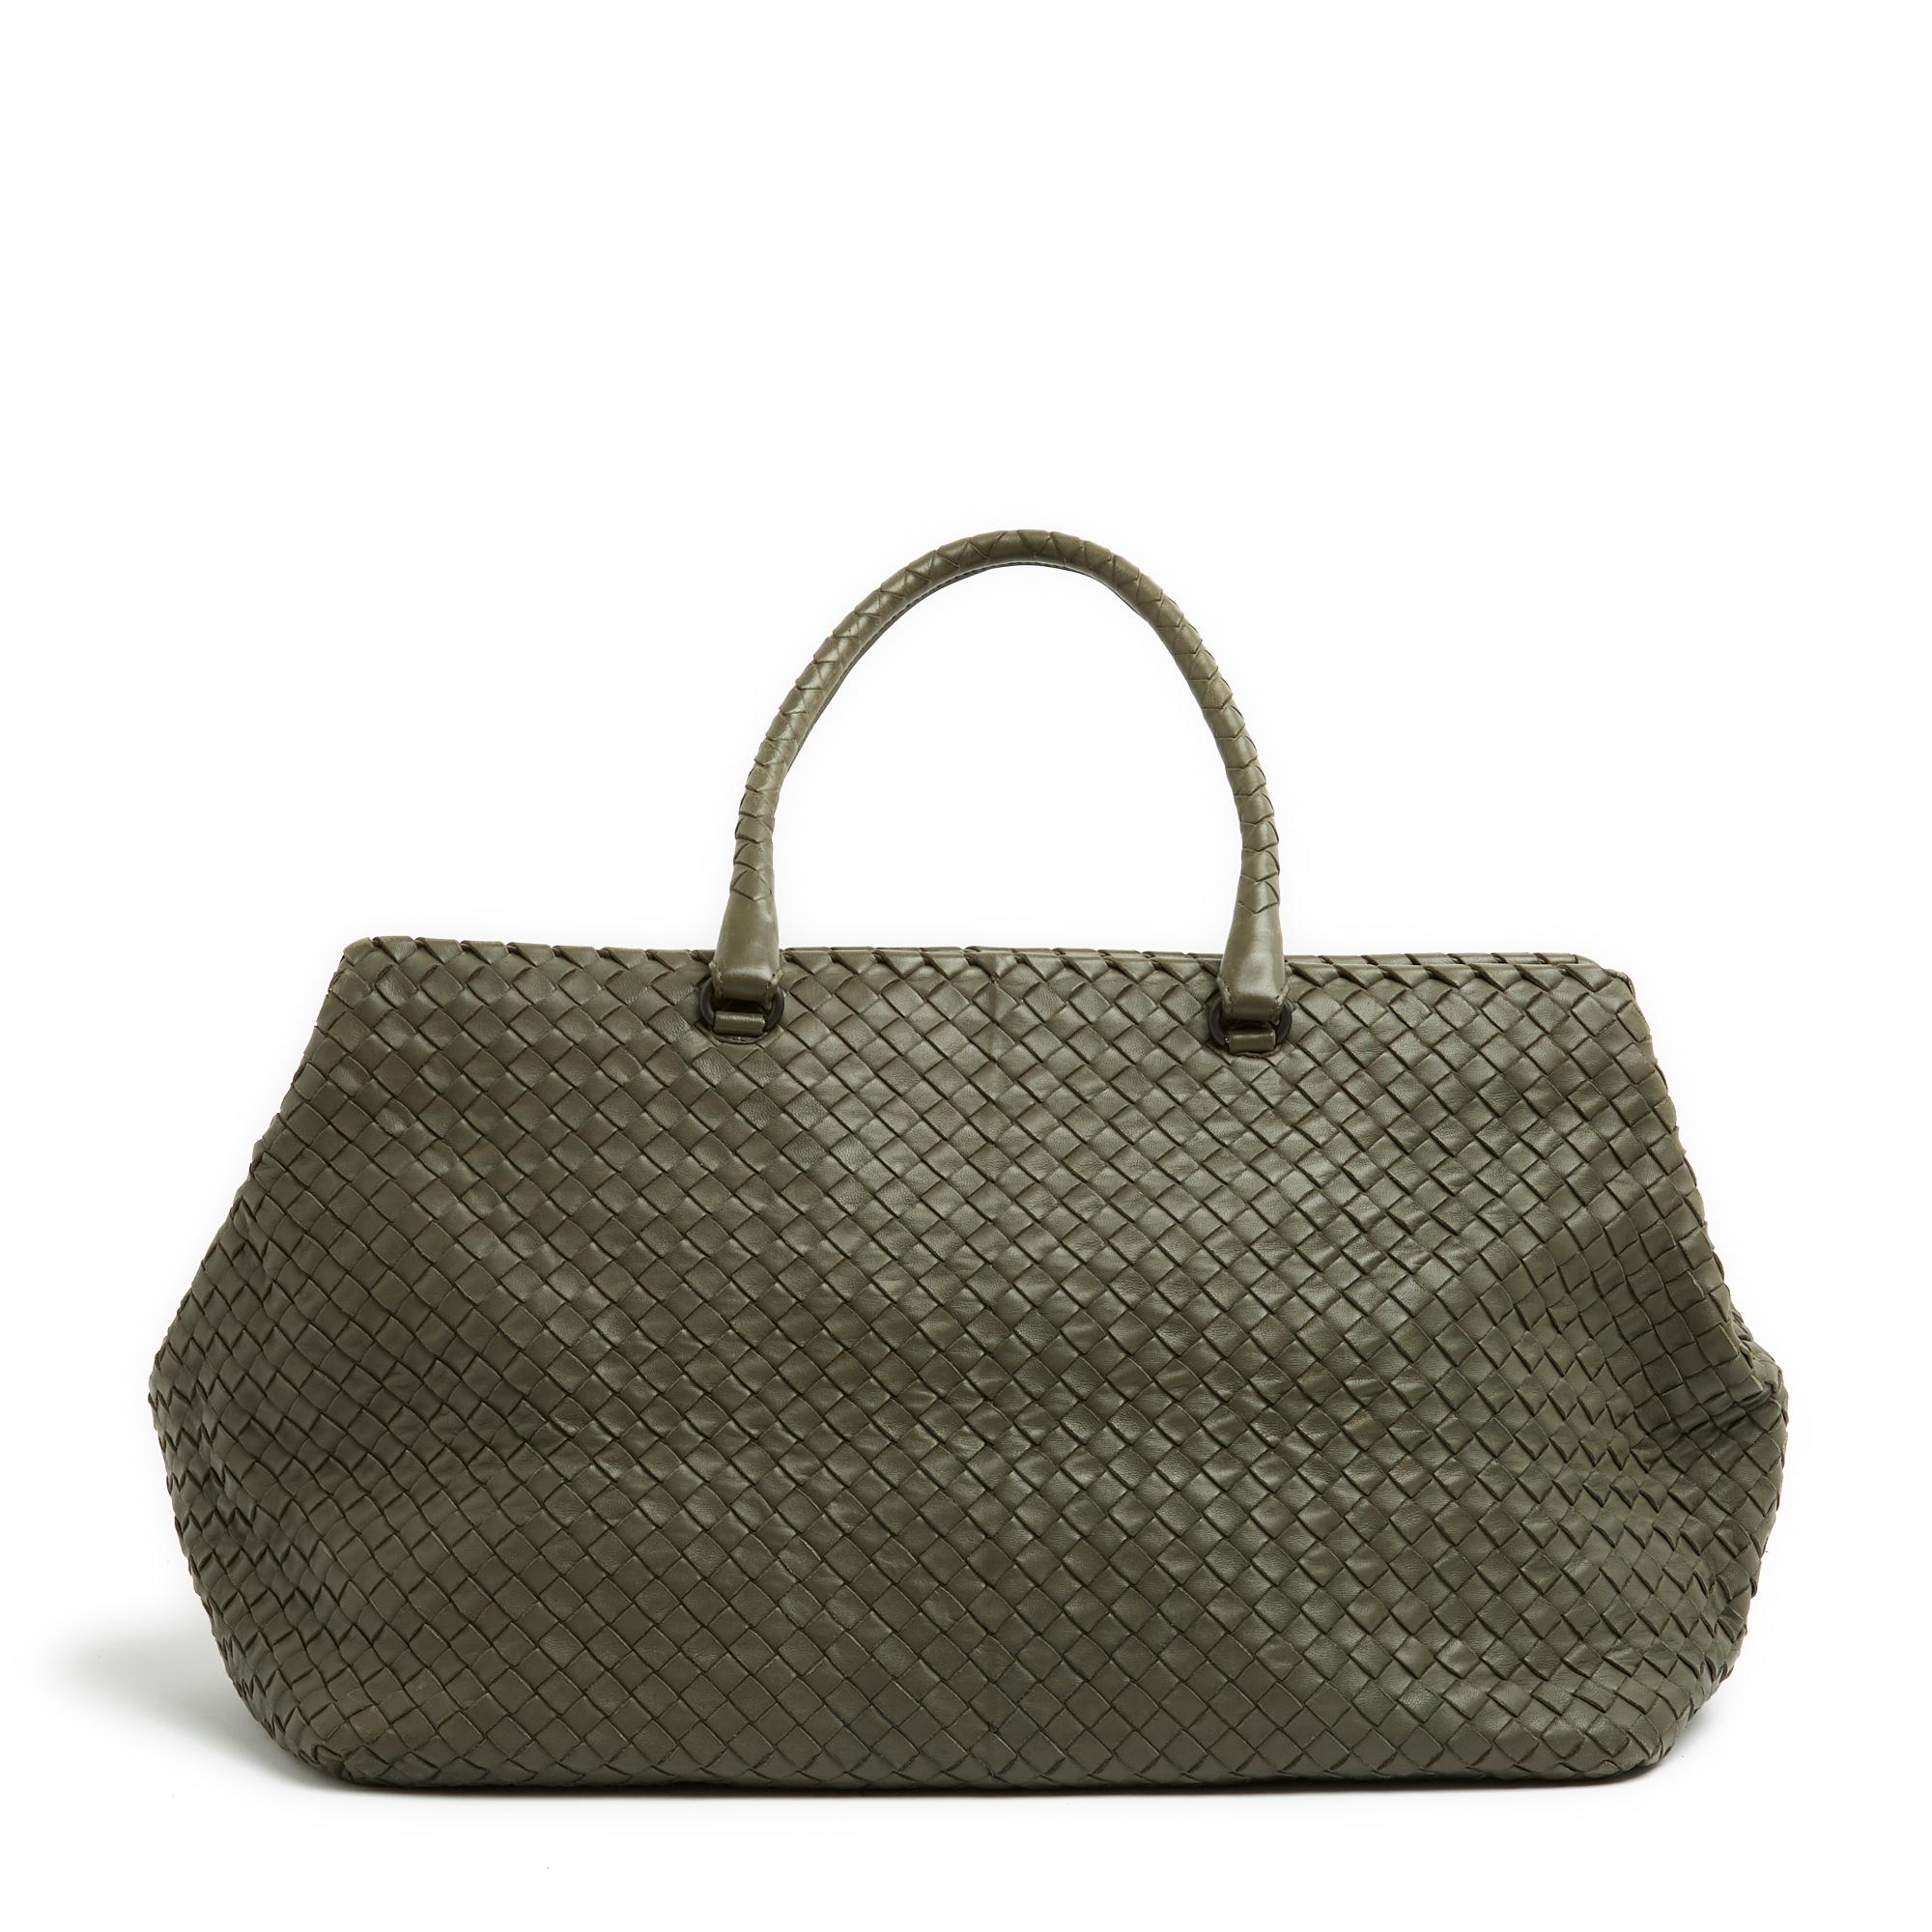 Bottega Veneta Sac Voyage MM Intrecciato Green Leather Medium Travel bag   In Excellent Condition For Sale In PARIS, FR